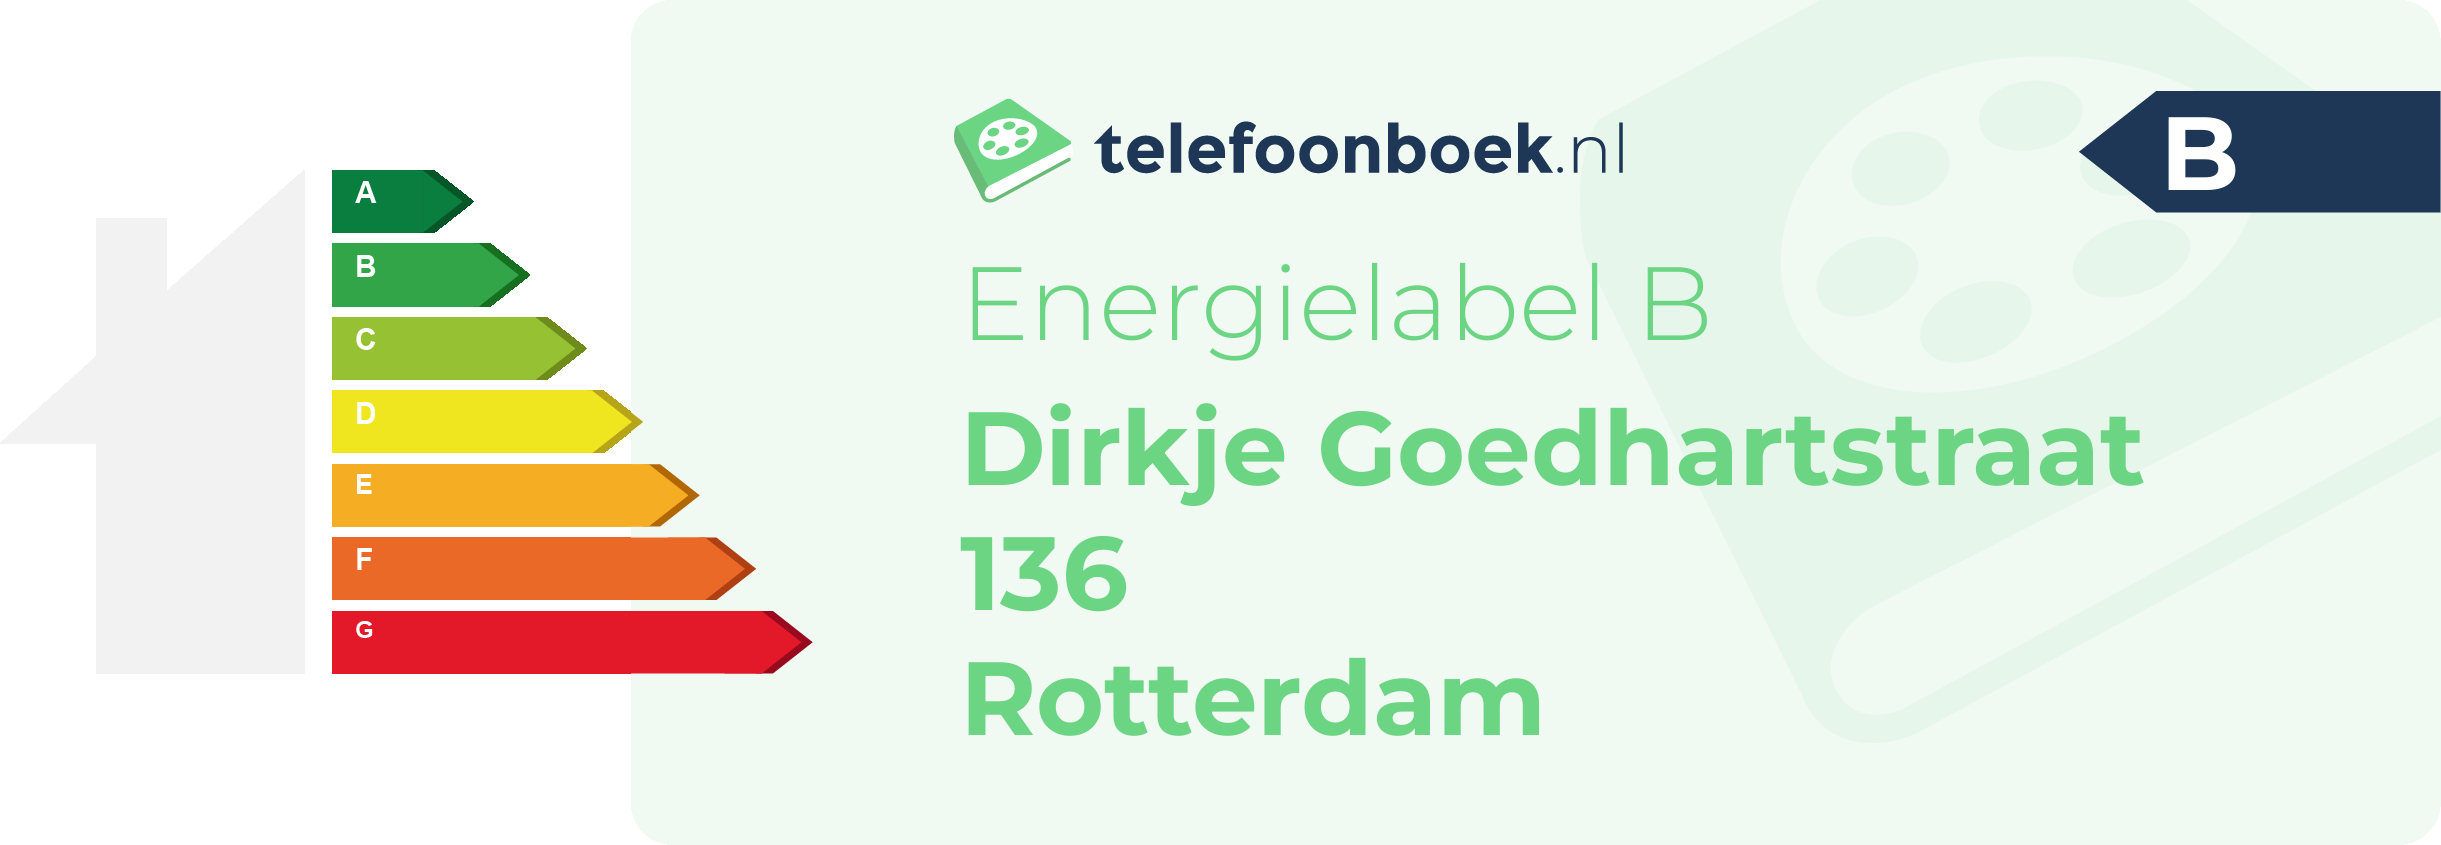 Energielabel Dirkje Goedhartstraat 136 Rotterdam